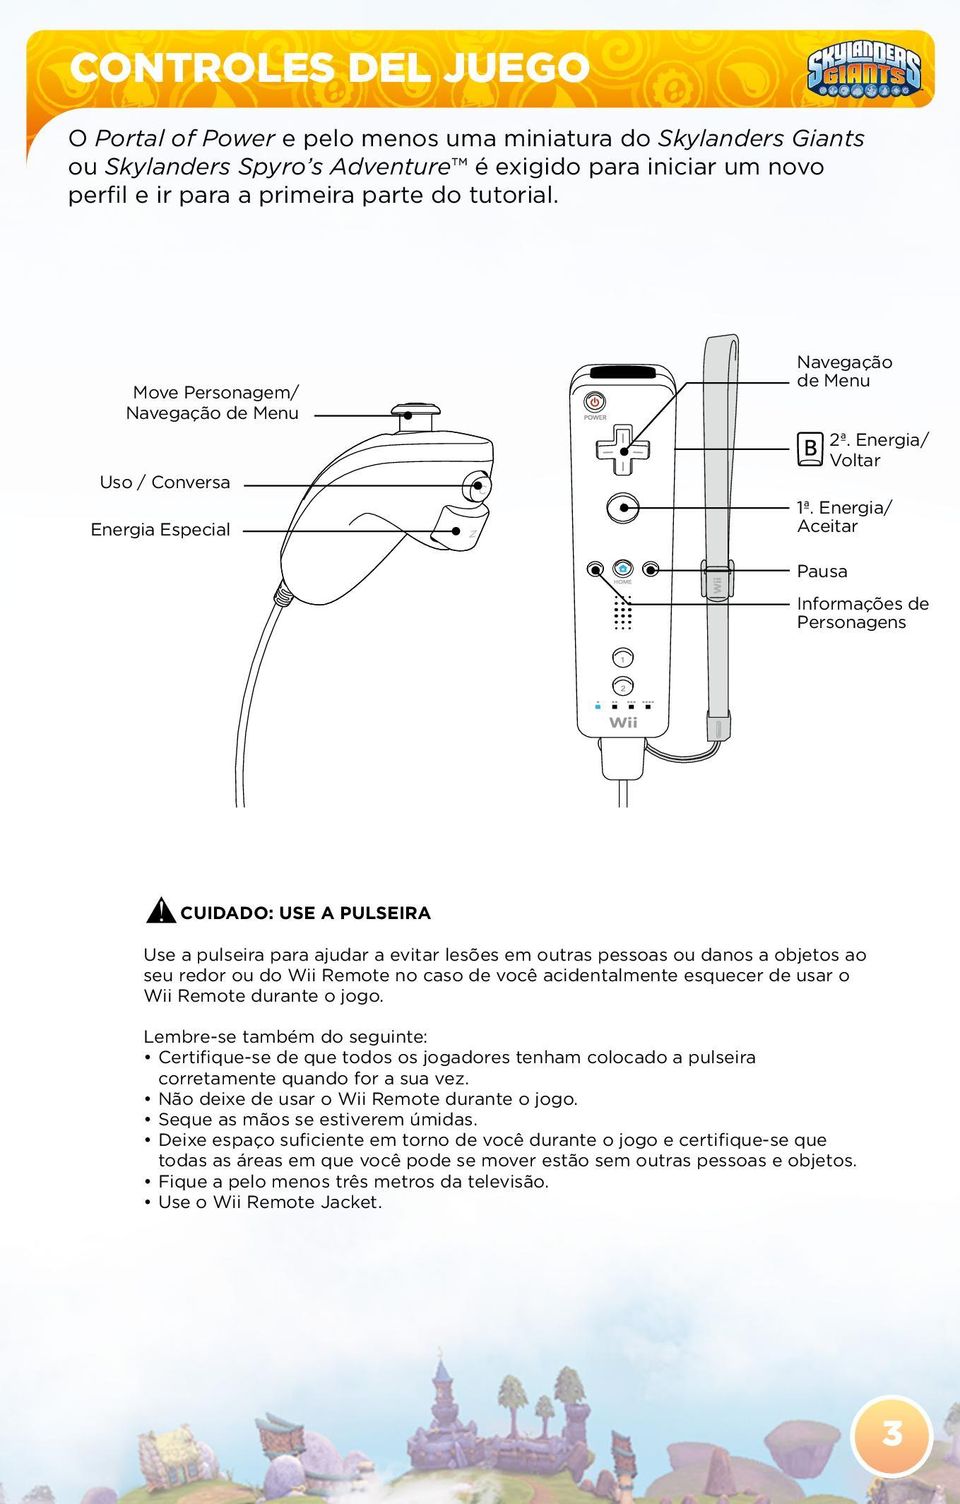 Energia/ Aceitar Pausa Informações de Personagens CUIDADO: USE A PULSEIRA Use a pulseira para ajudar a evitar lesões em outras pessoas ou danos a objetos ao seu redor ou do Wii Remote no caso de você